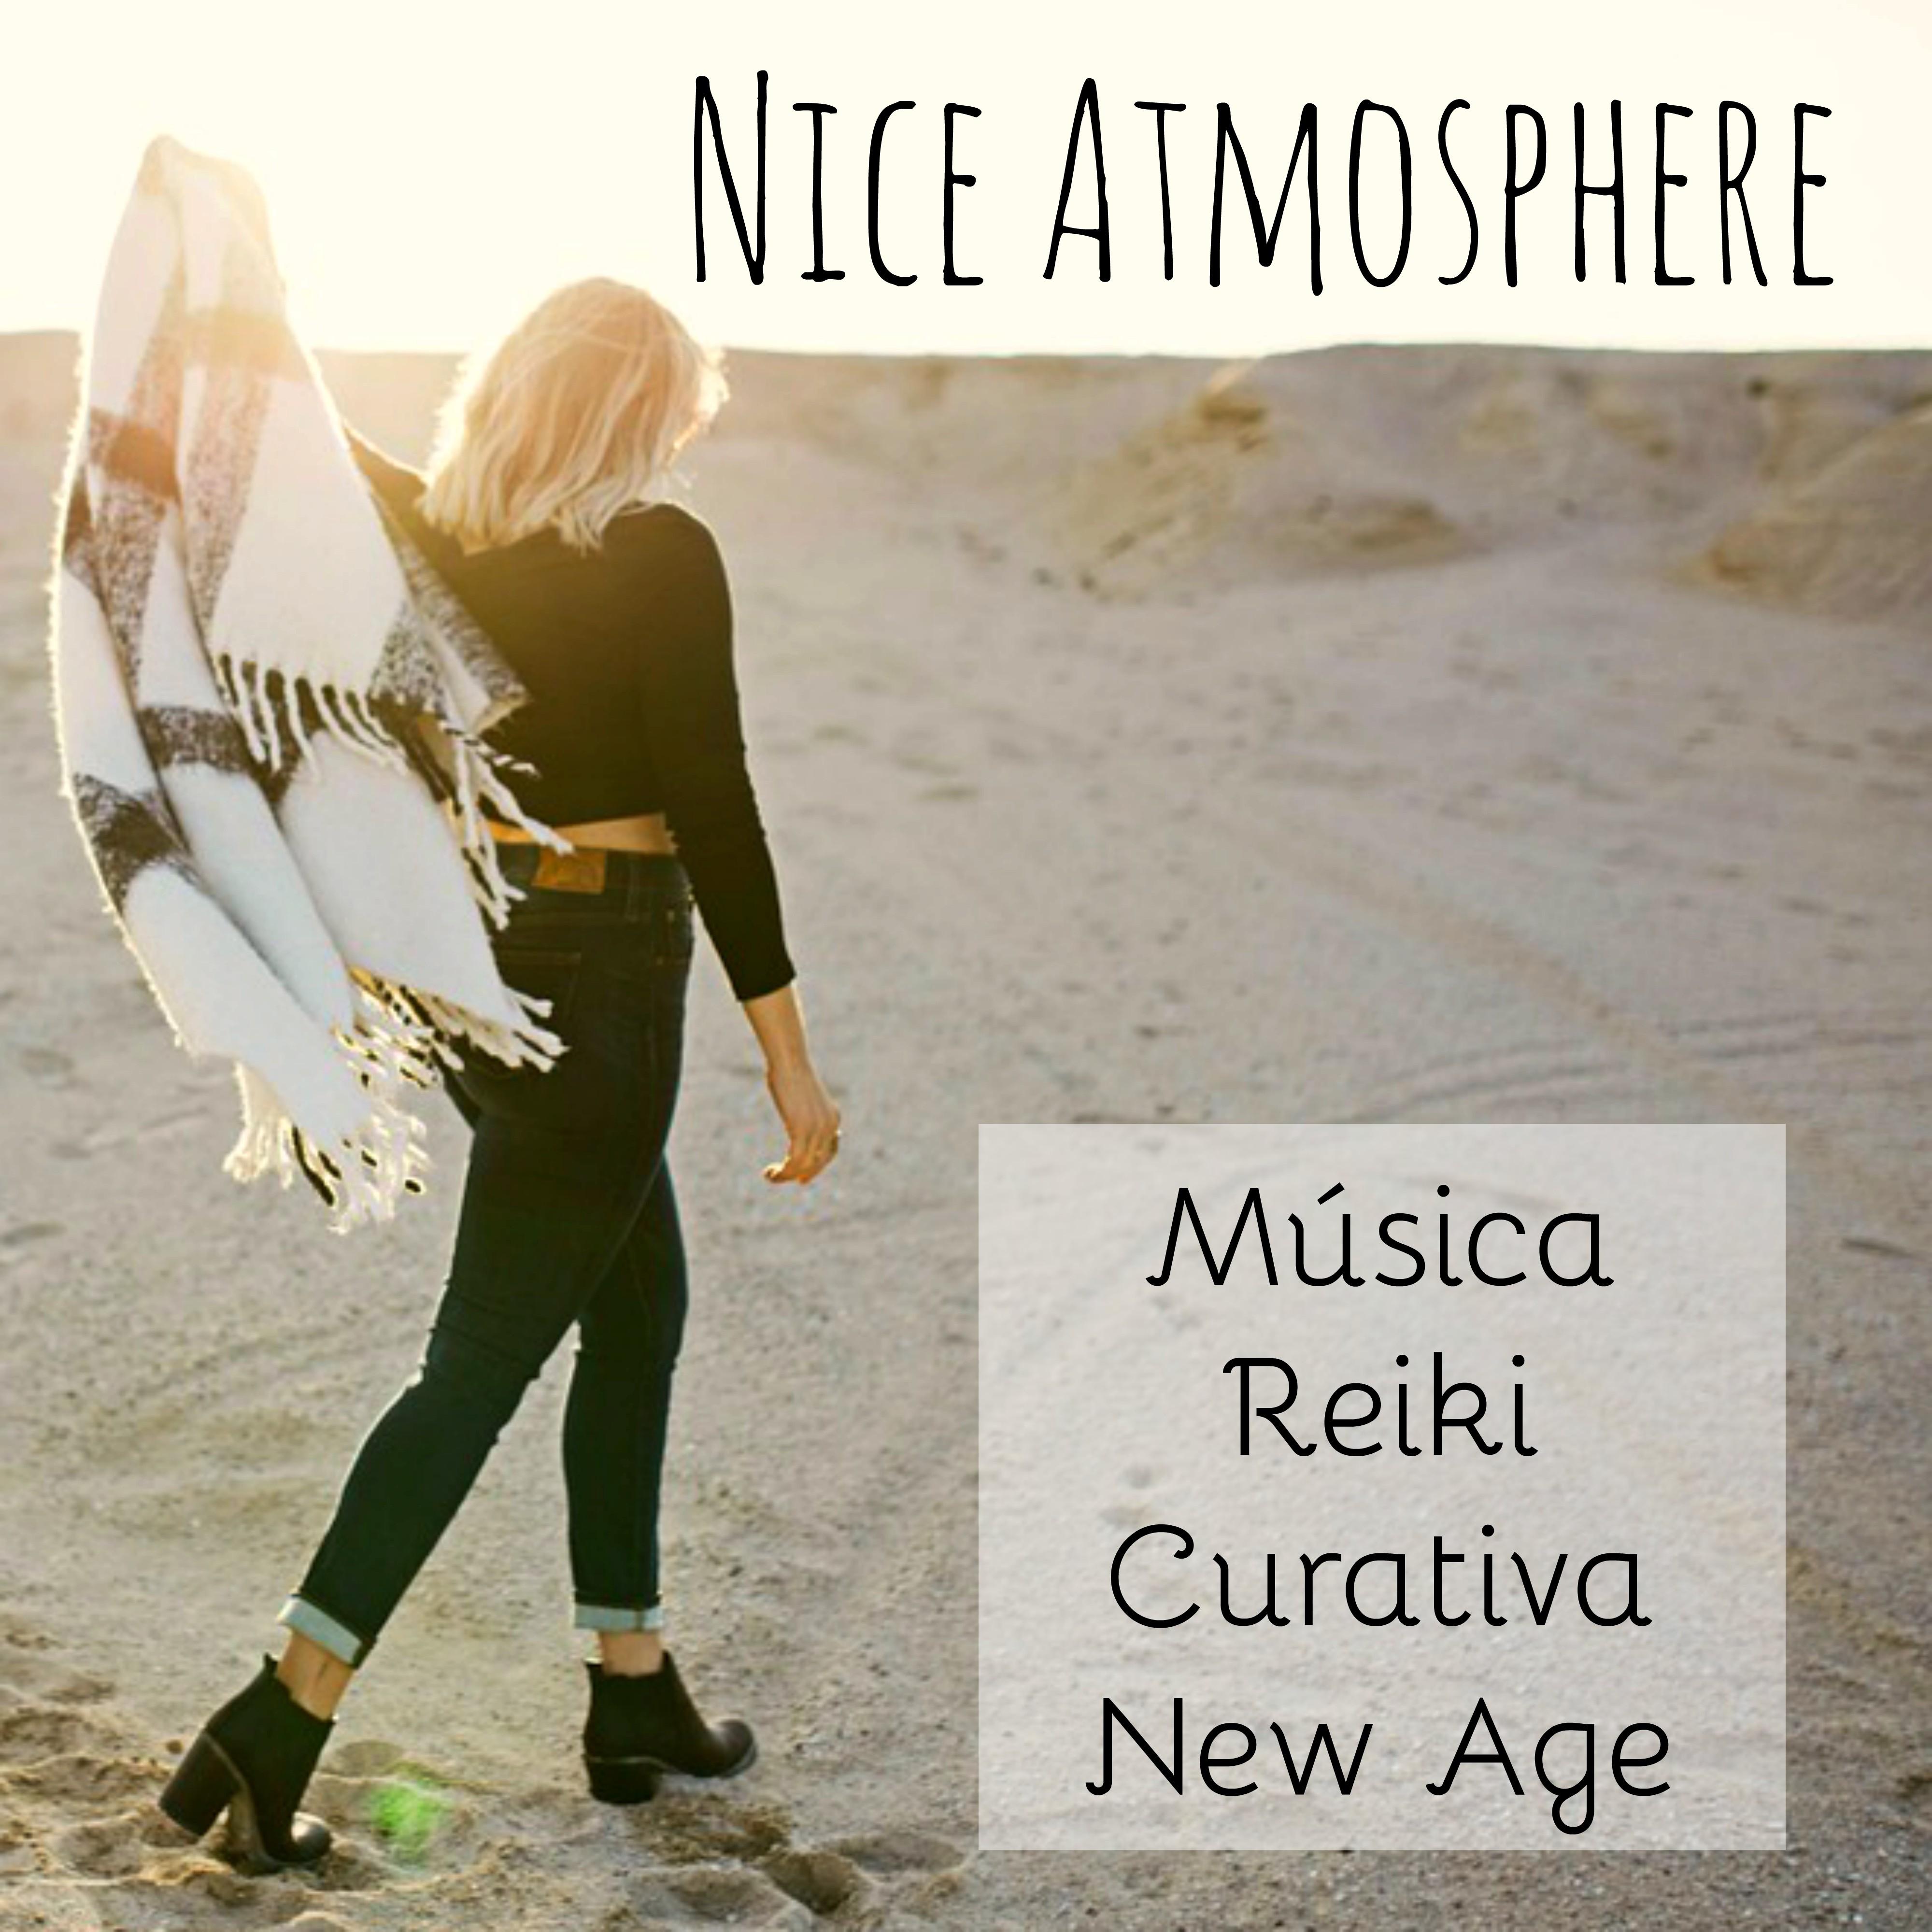 Nice Atmosphere - Música Reiki Curativa New Age para Alinear Chakras Reducir la Ansiedad Ejercicios de Meditación con Sonidos Naturales Instrumentales Binaurales